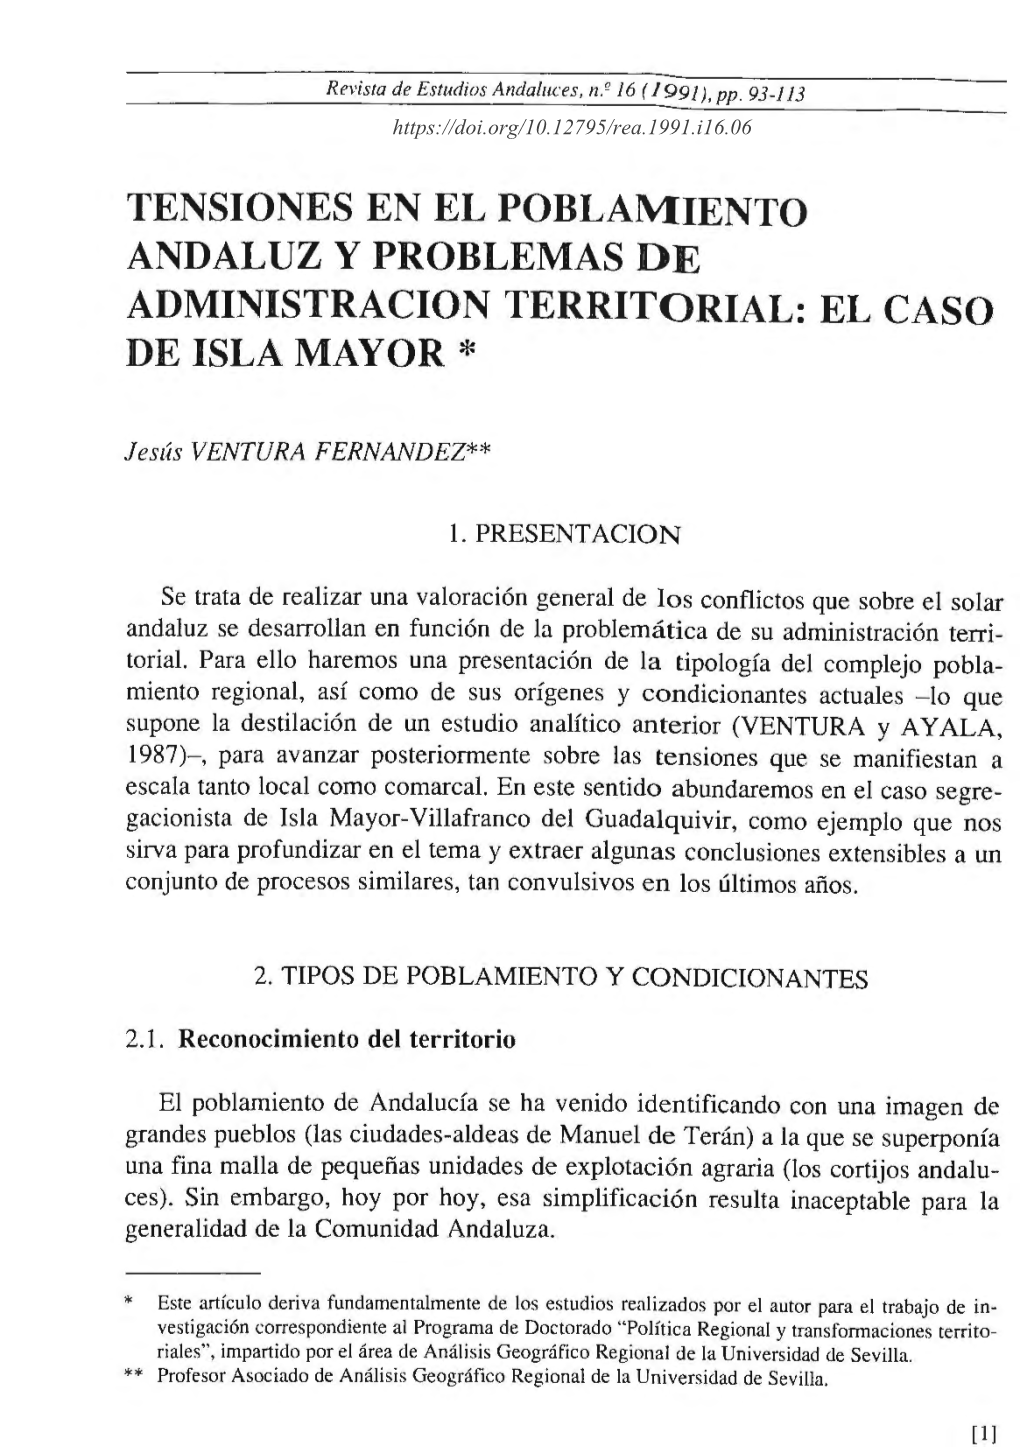 Tensiones En El Poblamiento Andaluz Y Problemas De Administracion Territorial: El Caso De Isla Mayor *